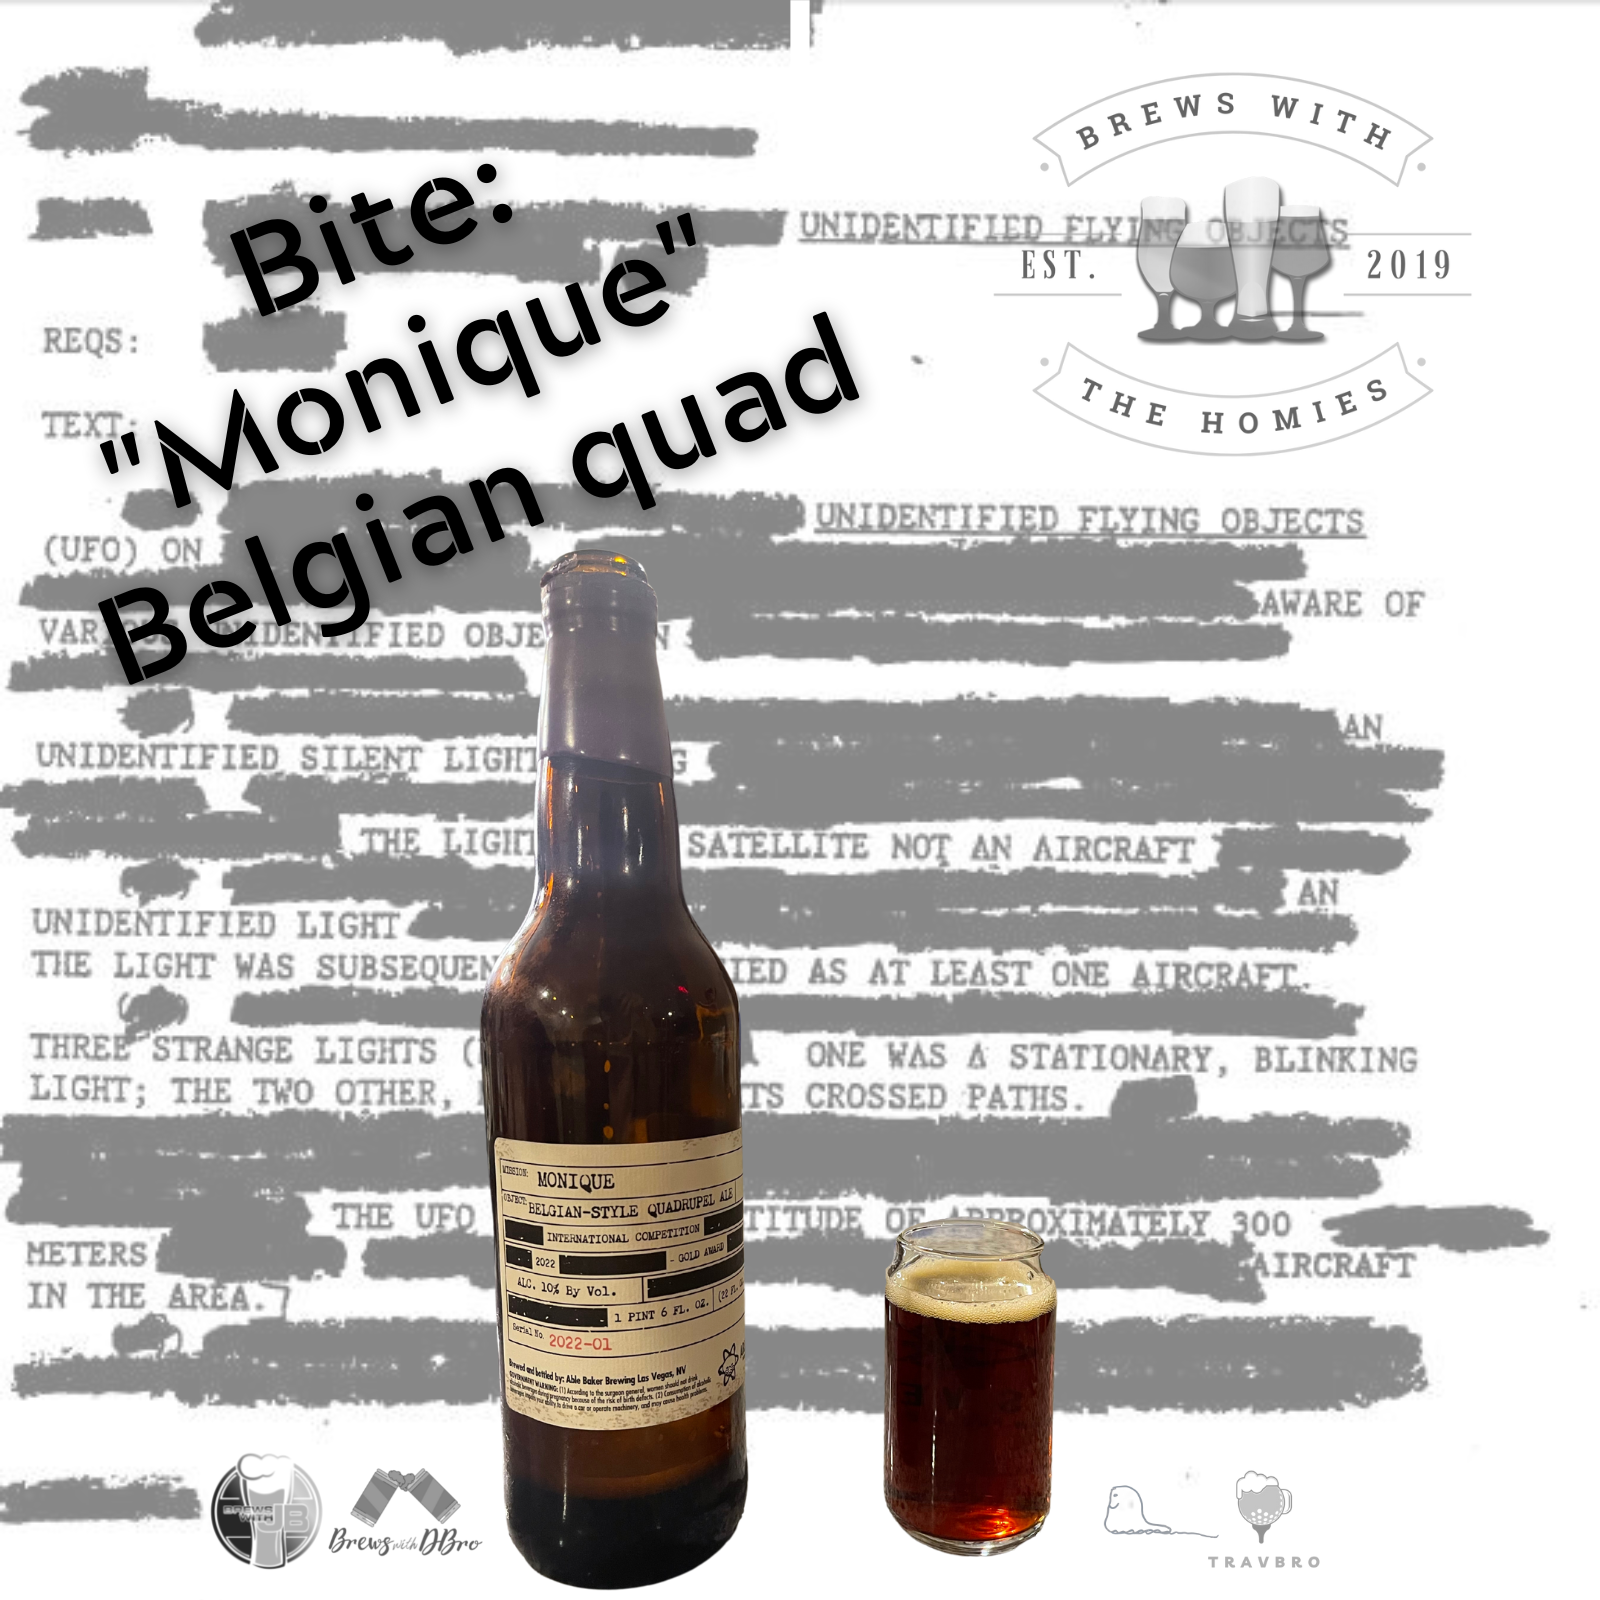 Bite: "Monique" Belgian Quad